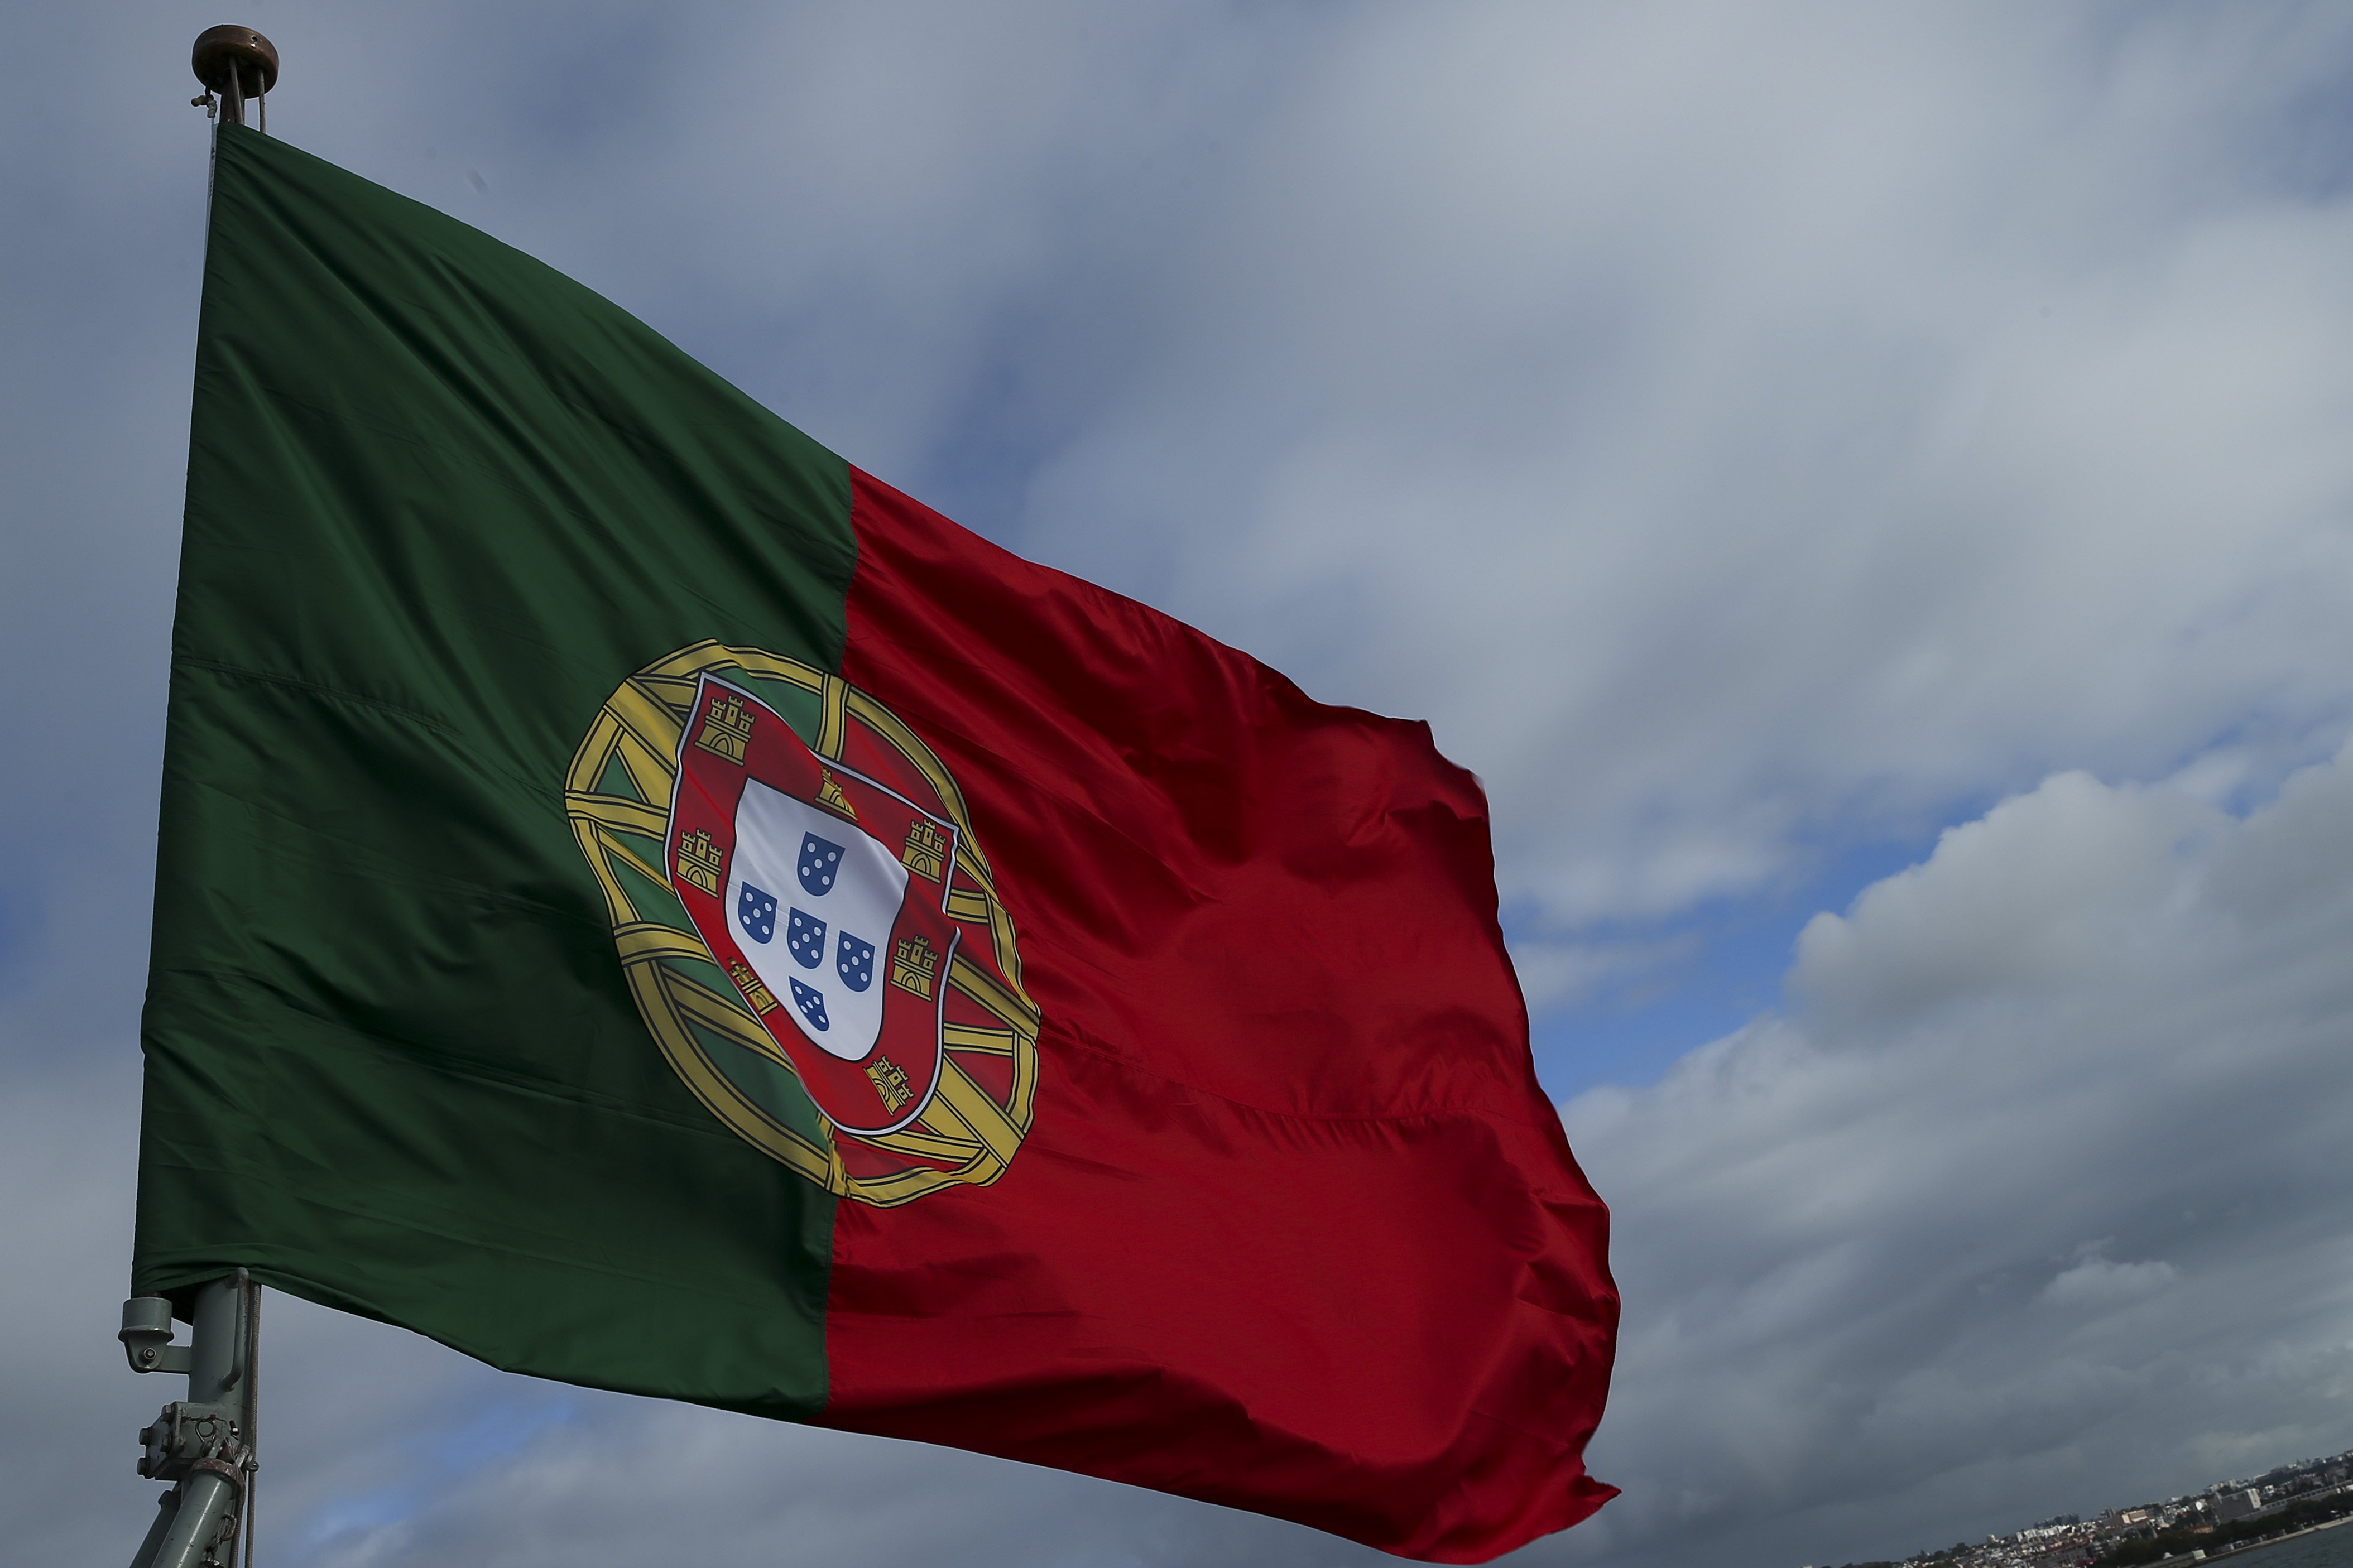 Portugal colocou 1.000 ME de dívida a longo prazo a juros mais altos